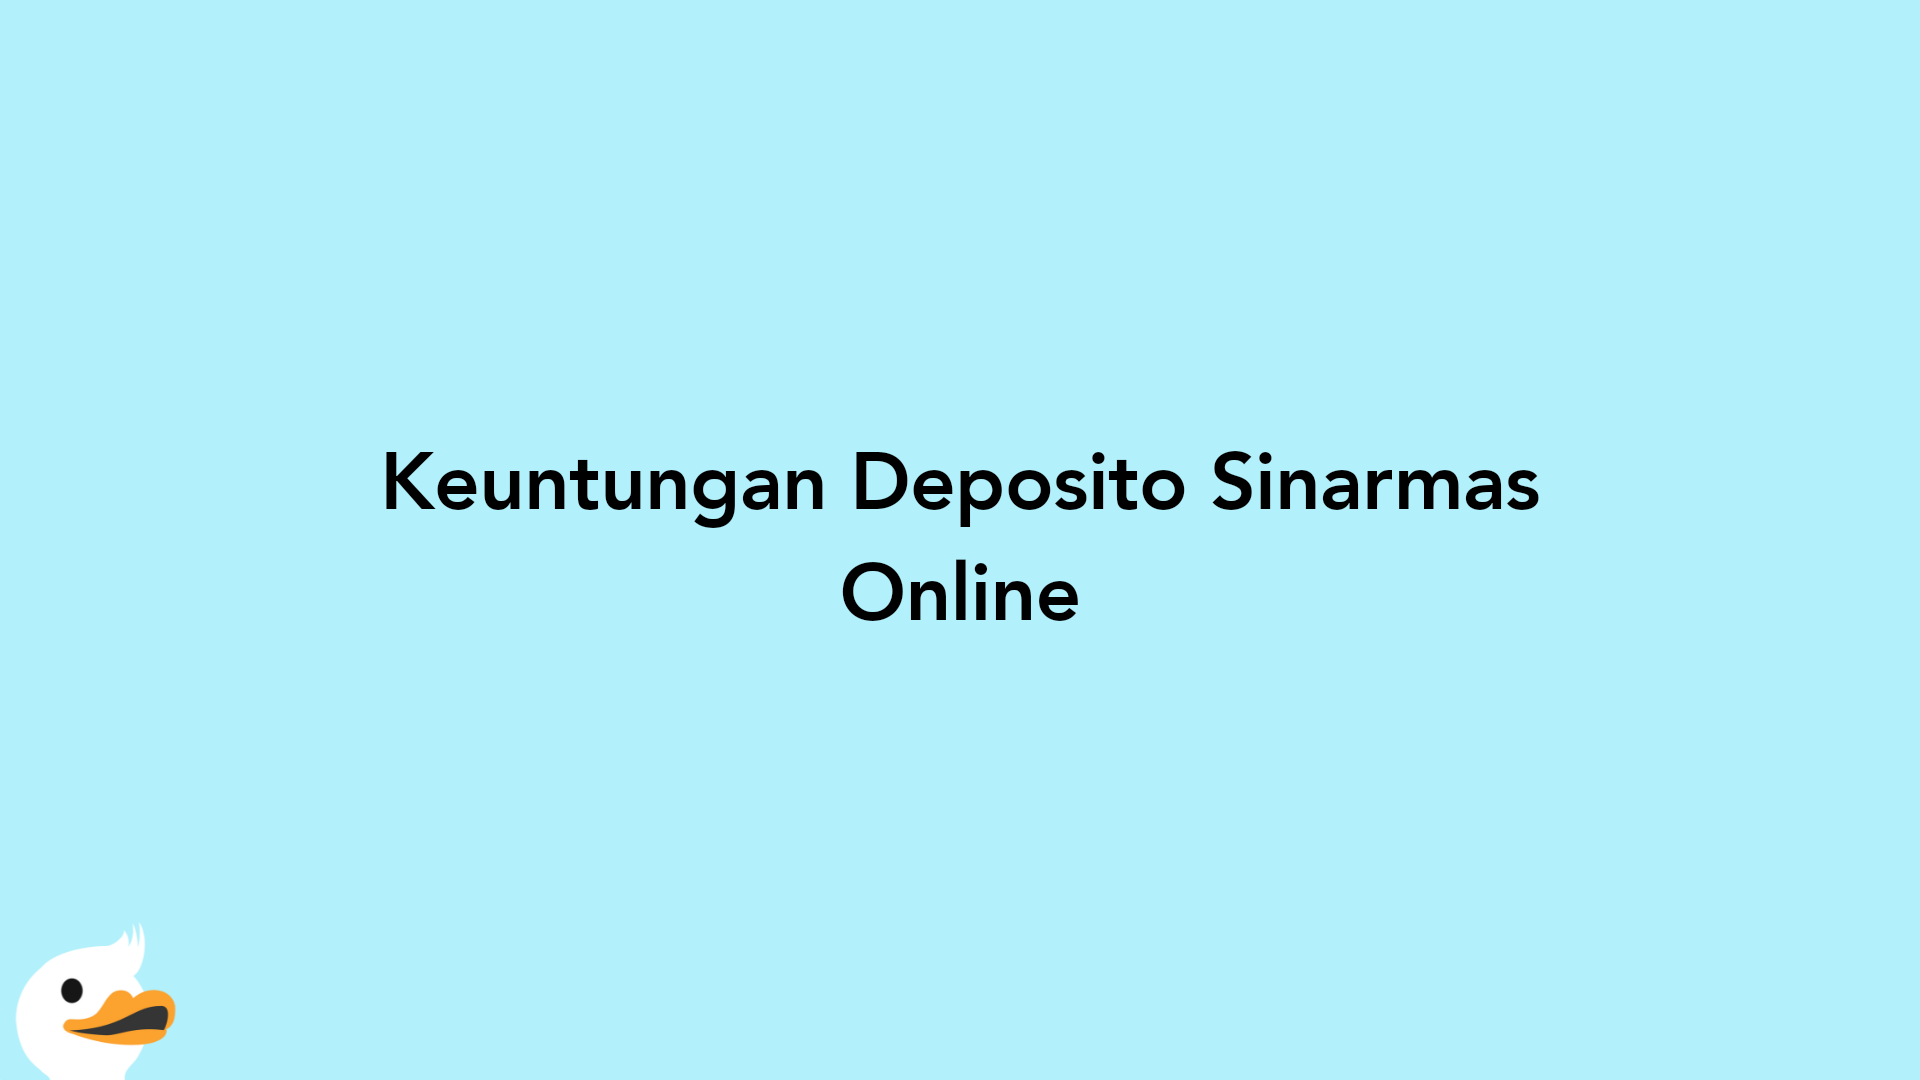 Keuntungan Deposito Sinarmas Online